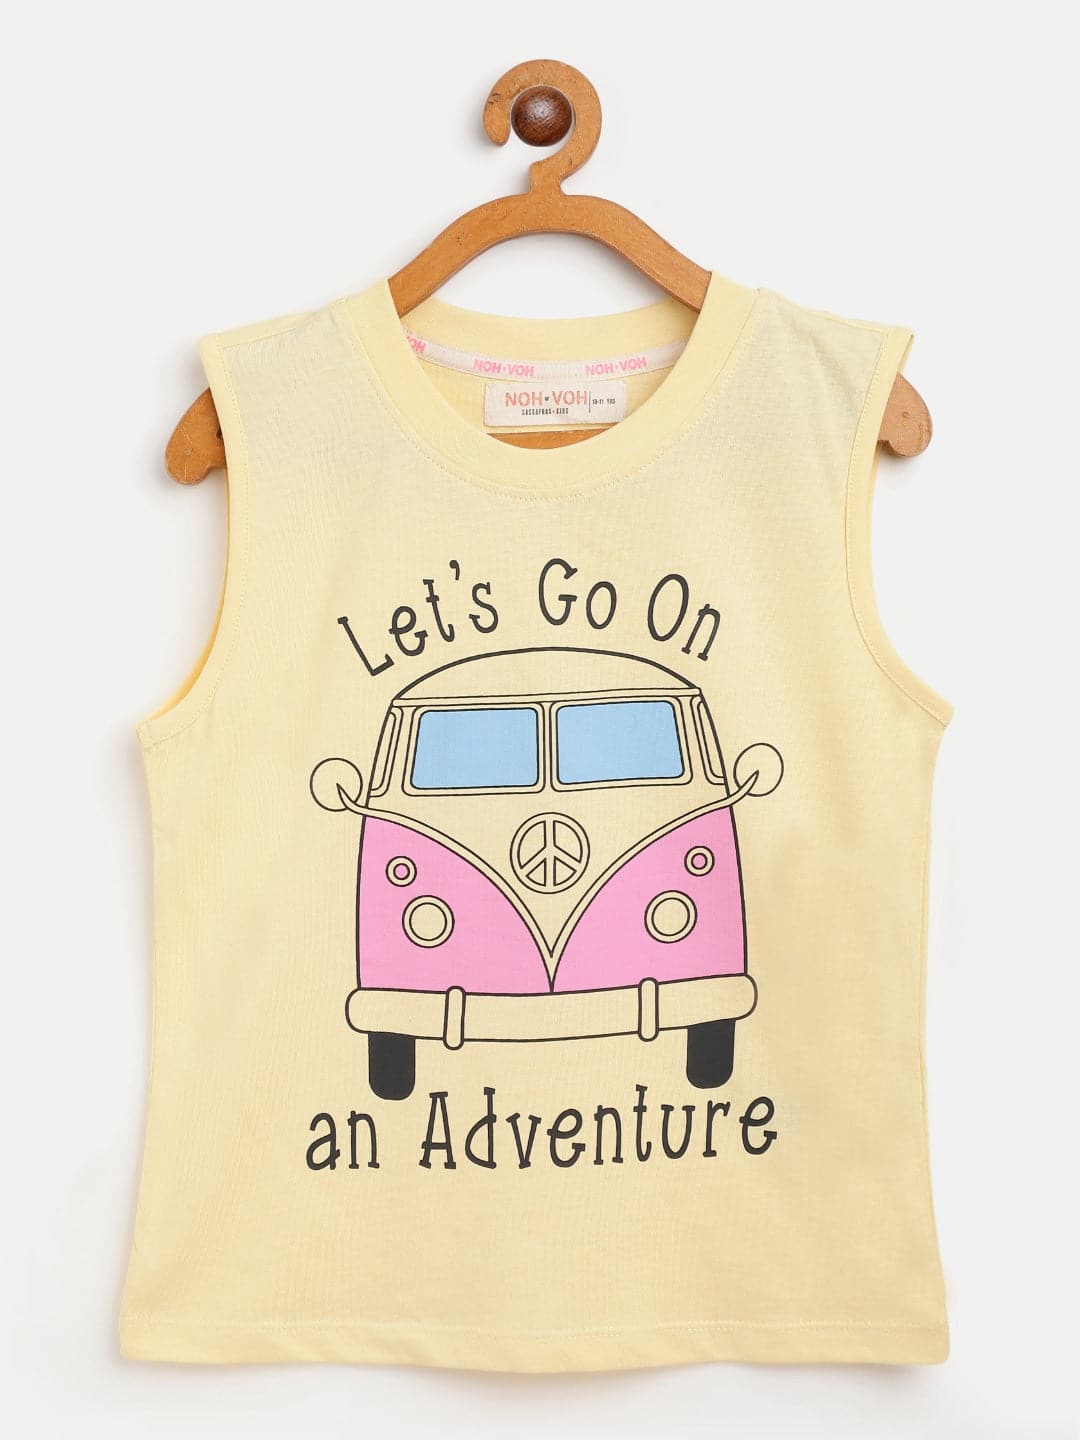 Girls Yellow Adventure Sleeveless T-Shirt-Girls T-Shirts-SASSAFRAS